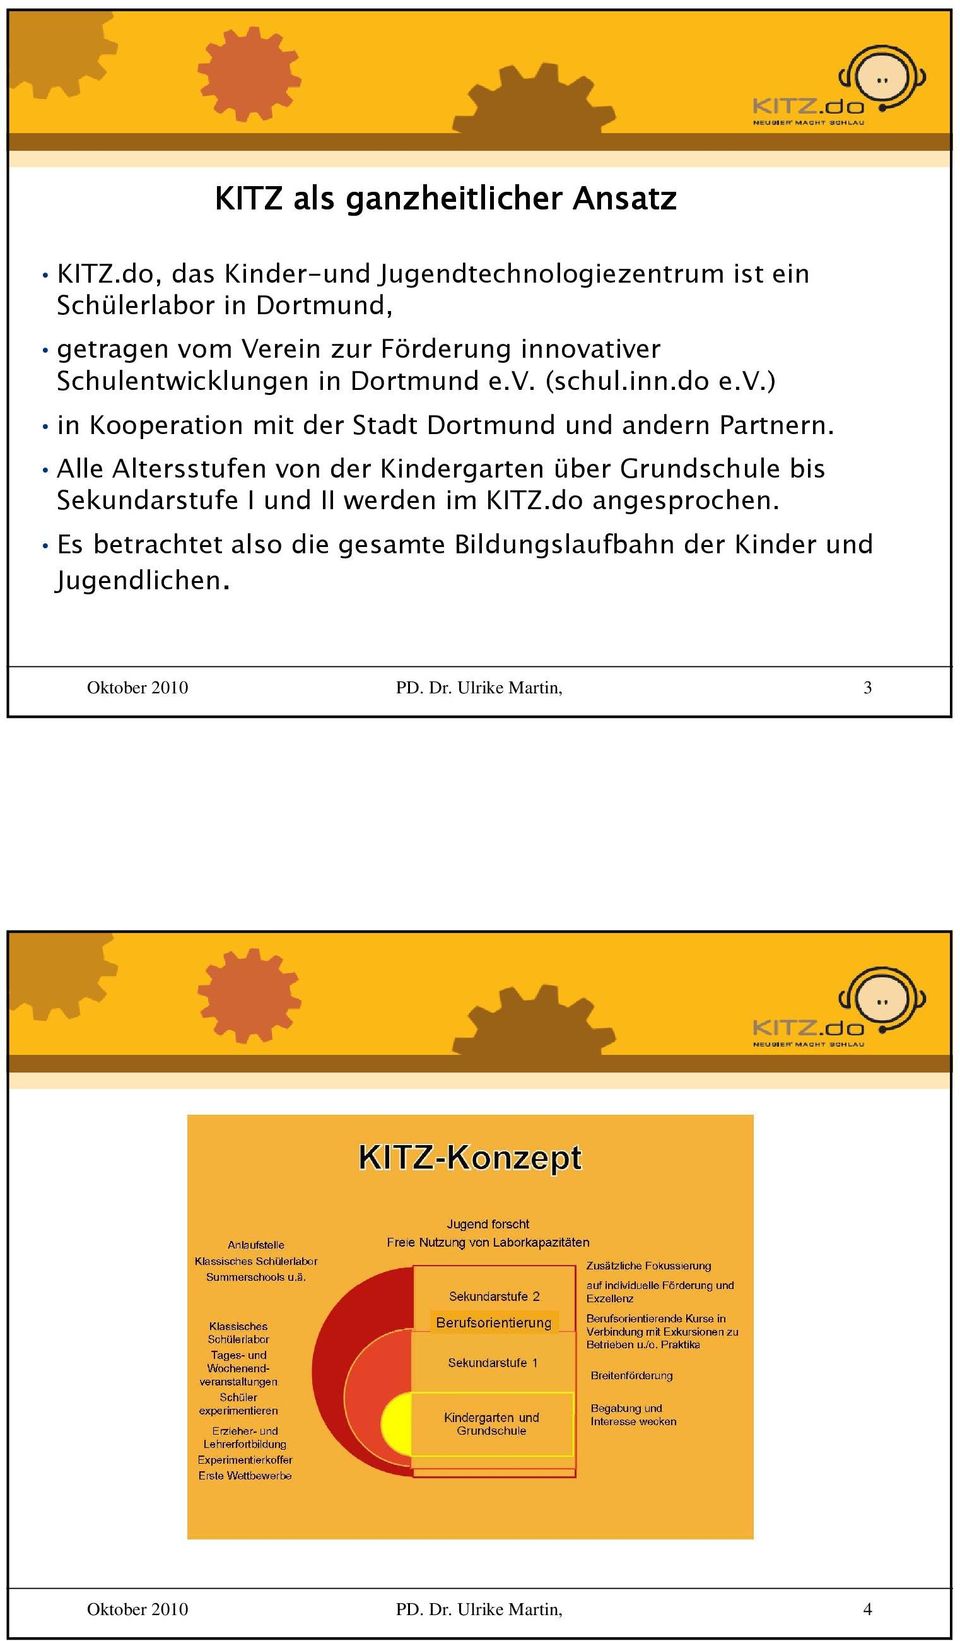 innovativer Schulentwicklungen in Dortmund e.v. (schul.inn.do e.v.) in Kooperation mit der Stadt Dortmund und andern Partnern.